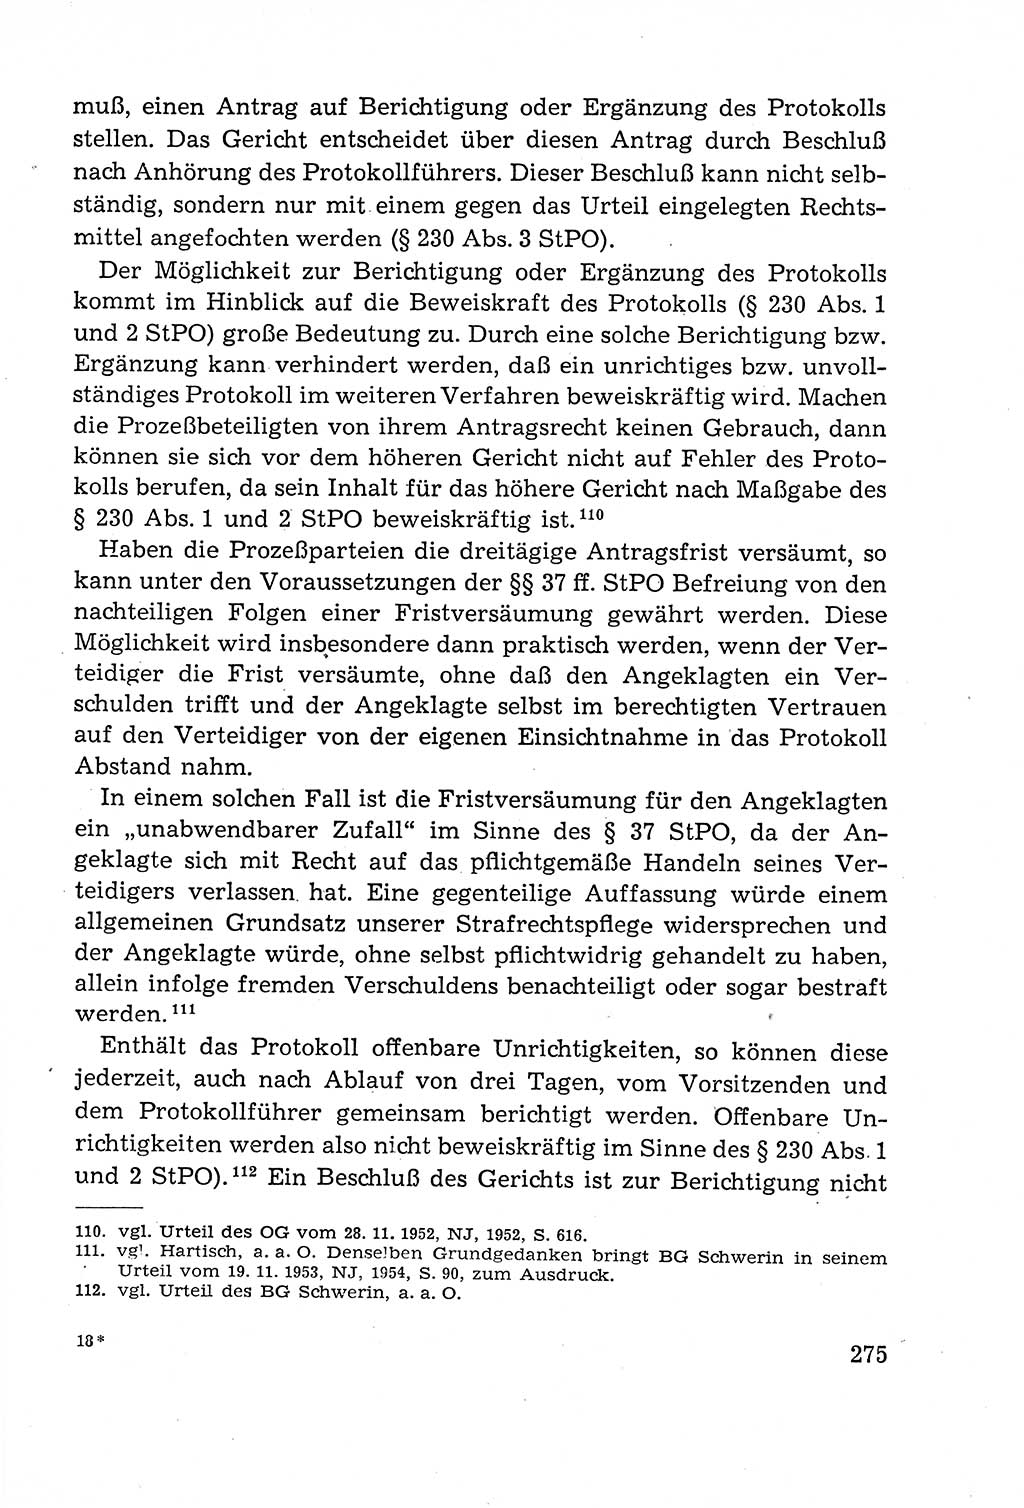 Leitfaden des Strafprozeßrechts der Deutschen Demokratischen Republik (DDR) 1959, Seite 275 (LF StPR DDR 1959, S. 275)